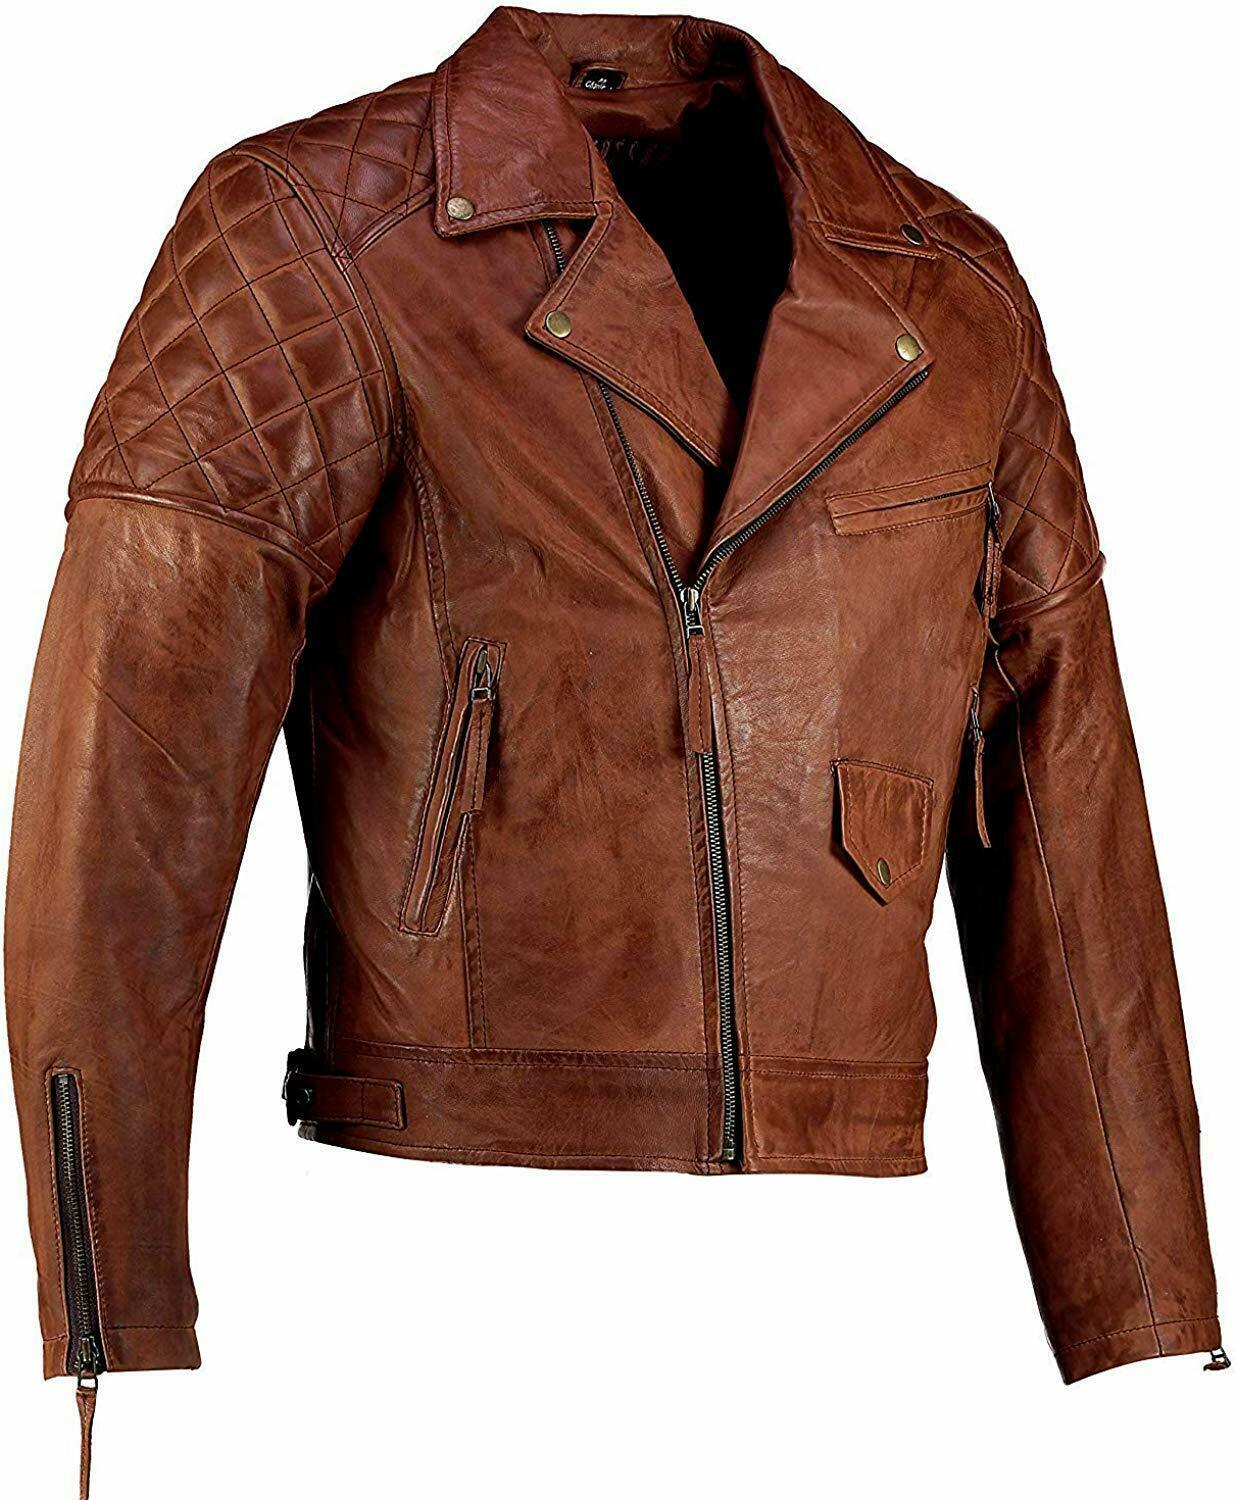 Primary image for Mens Moto Jacket Cafe Racer Vintage Distressed Biker Brown Leather Jacket Coat